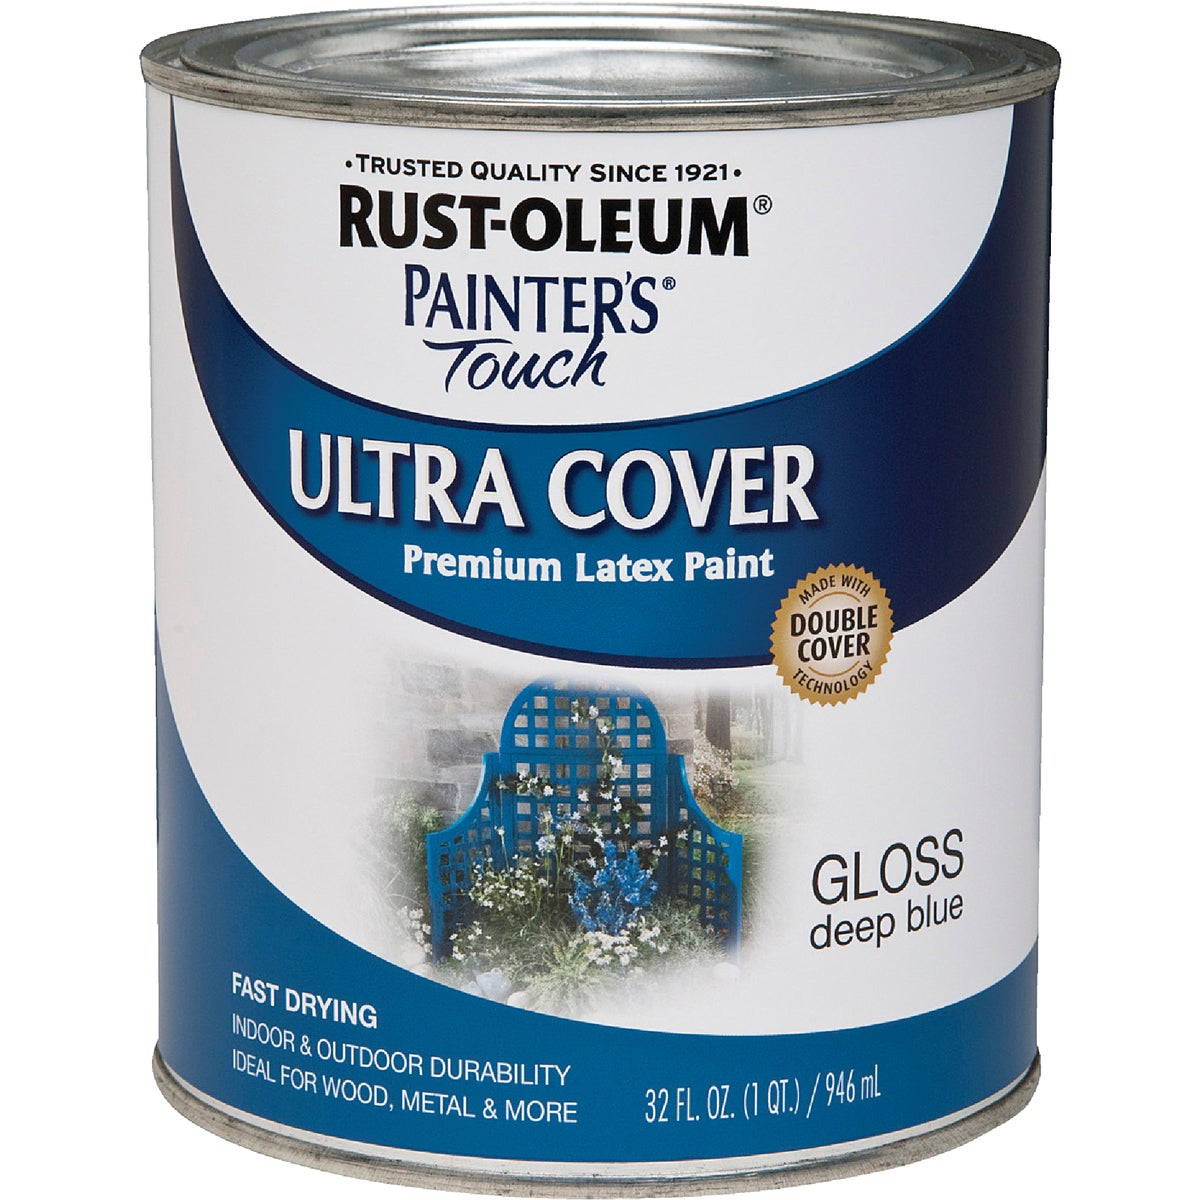 Rust-Oleum Painter's Touch 2X Ultra Cover Premium Latex Paint, Deep Blue, 1 Qt.